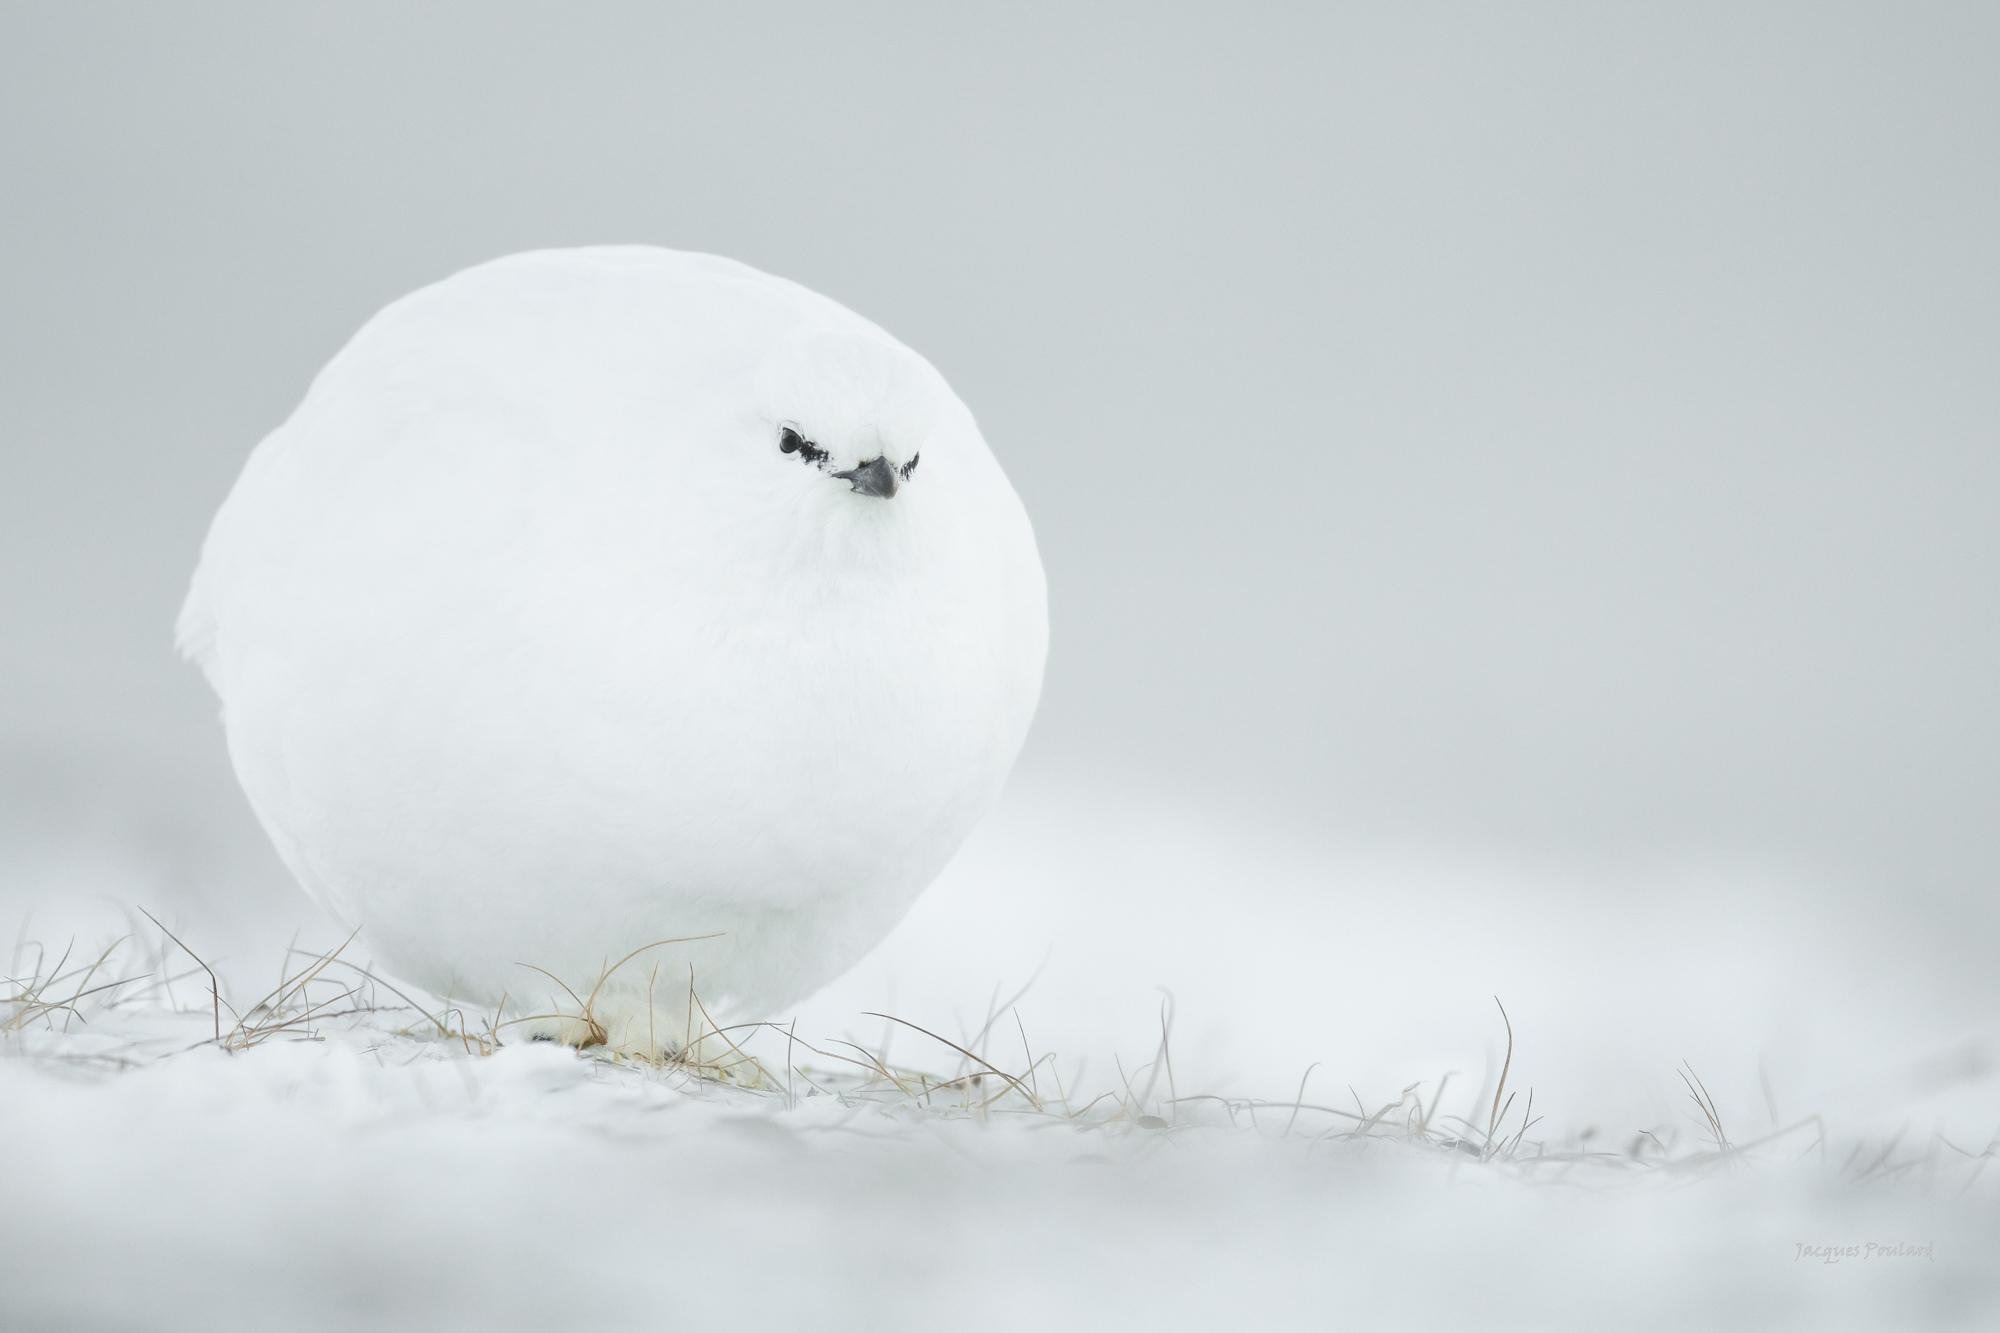 "Poule de neige" Svalbard